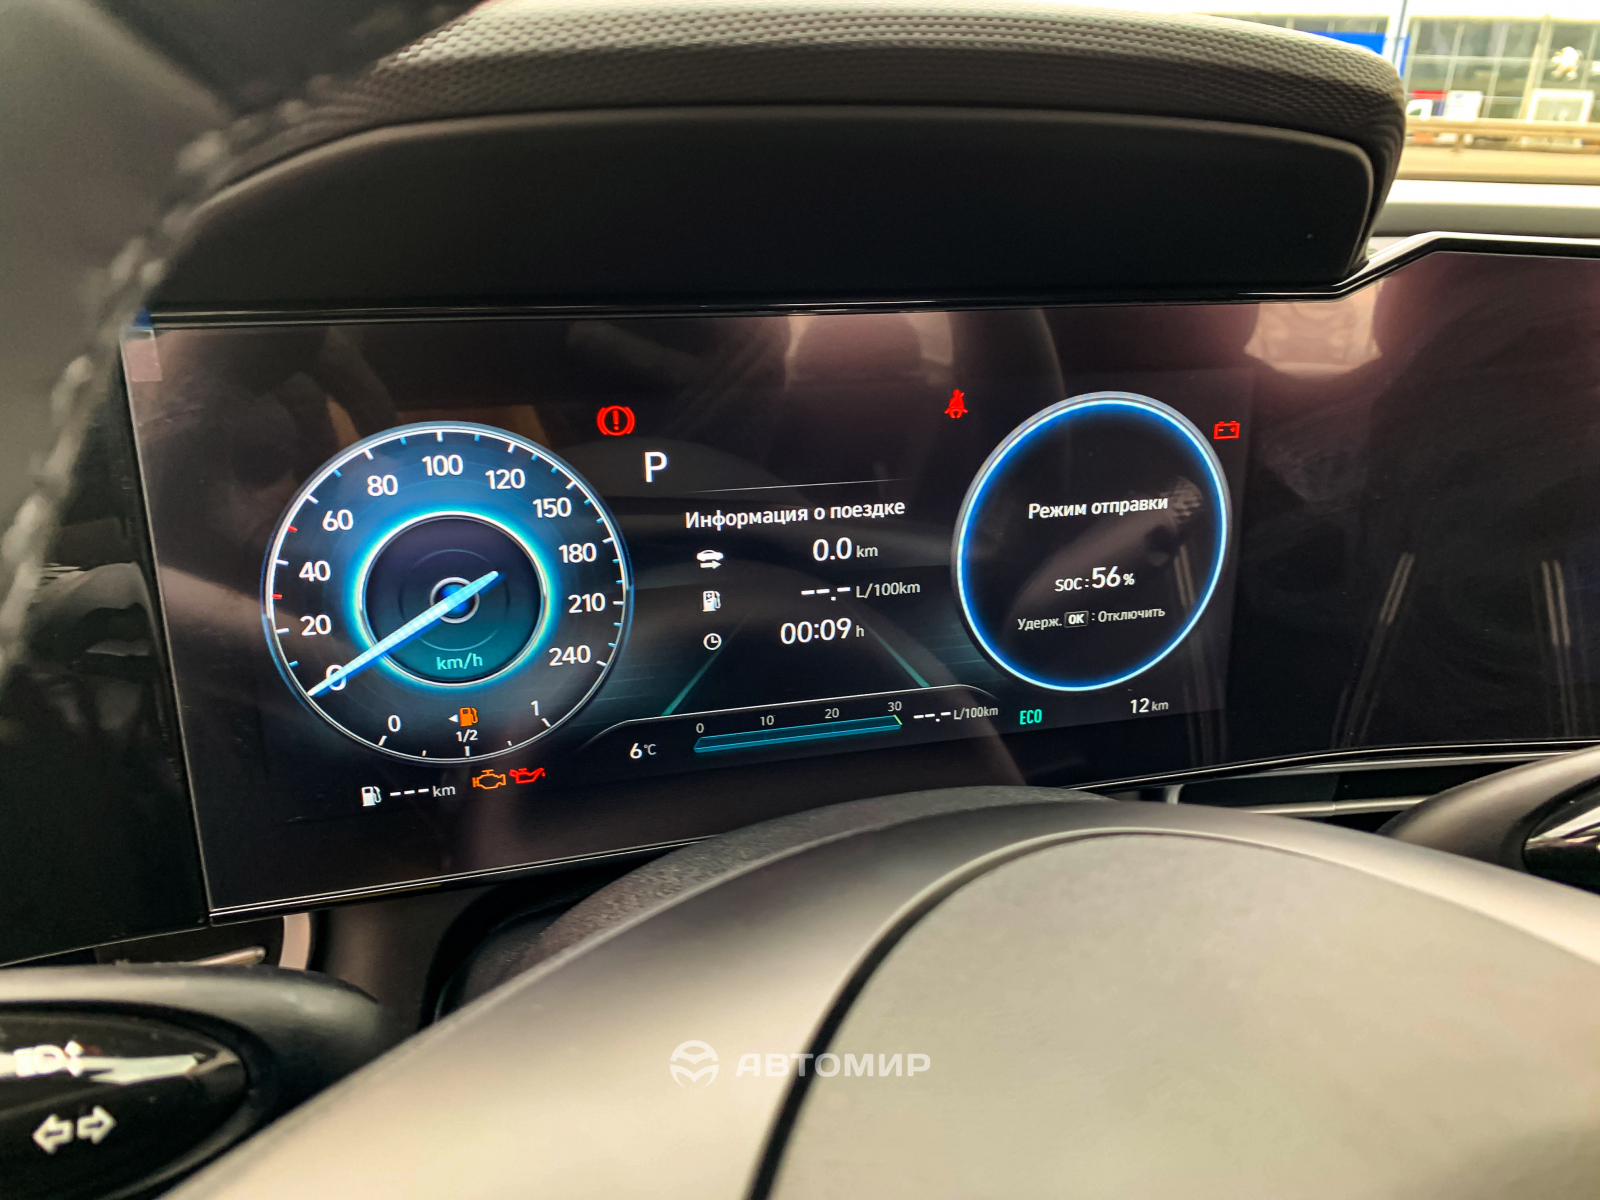 Hyundai Elantra Premium в наявності у автосалоні! | ВІК-Експо - фото 11